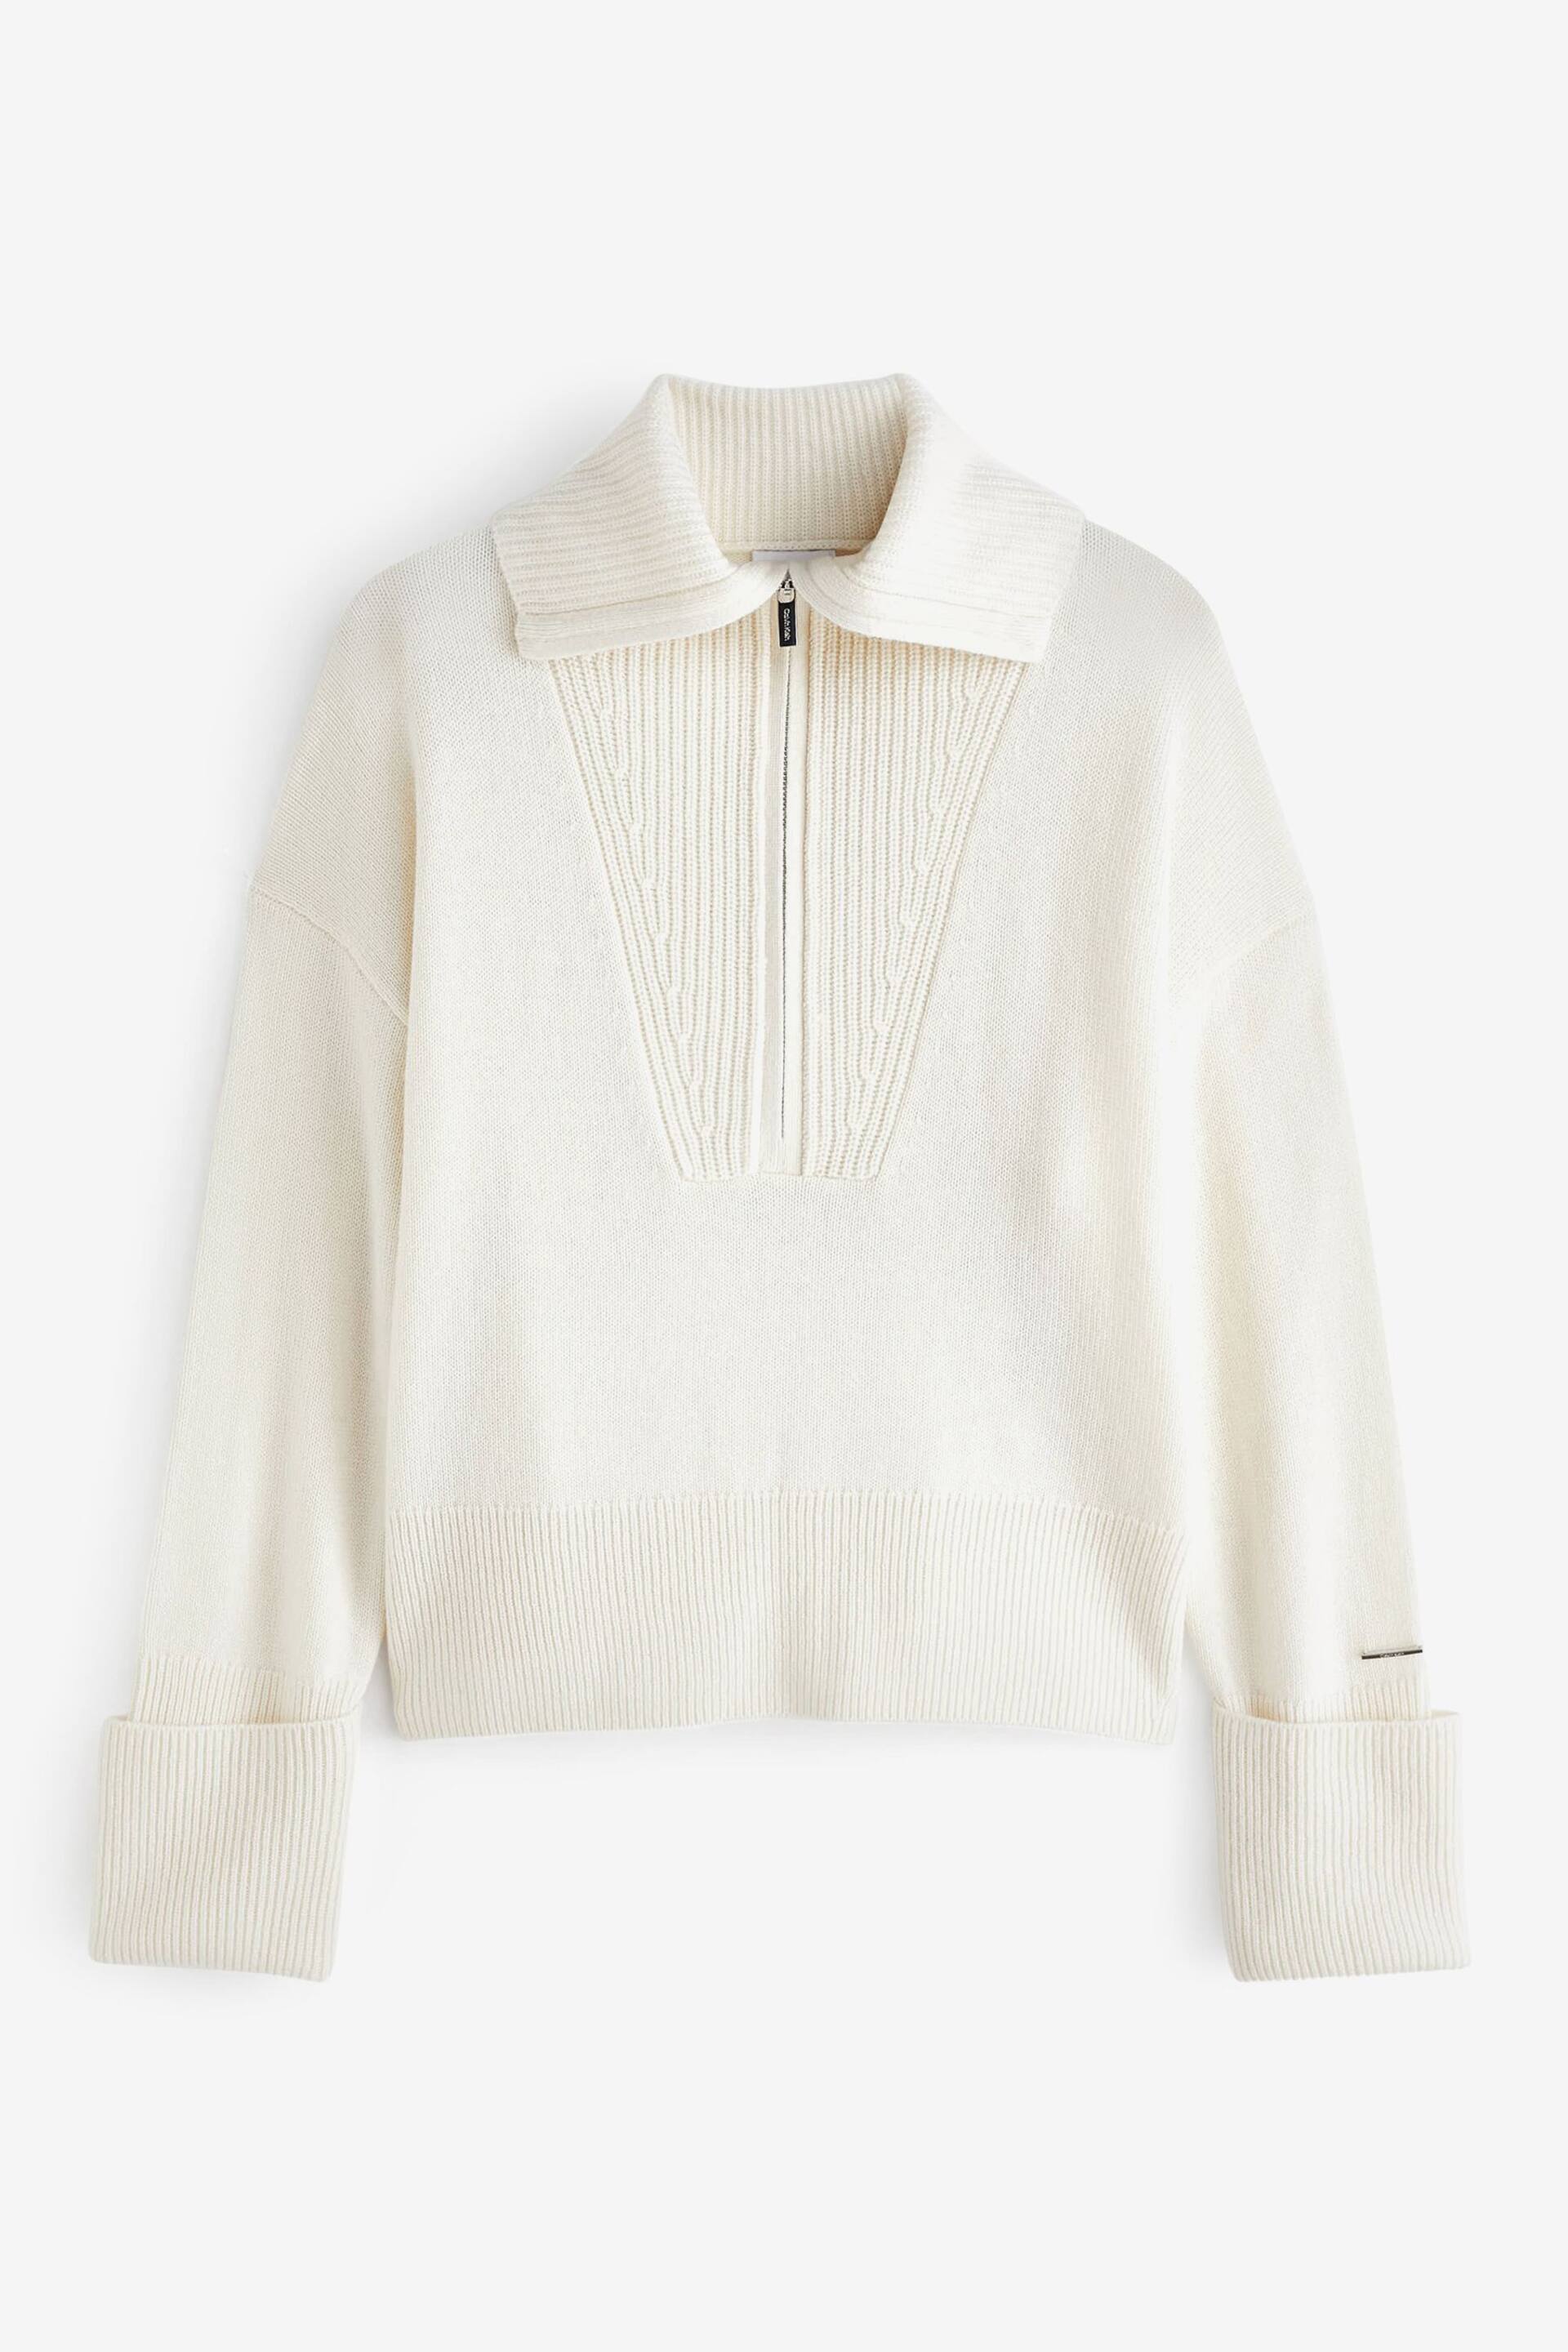 Calvin Klein White Cashmere Blend Zip Jumper - Image 6 of 6